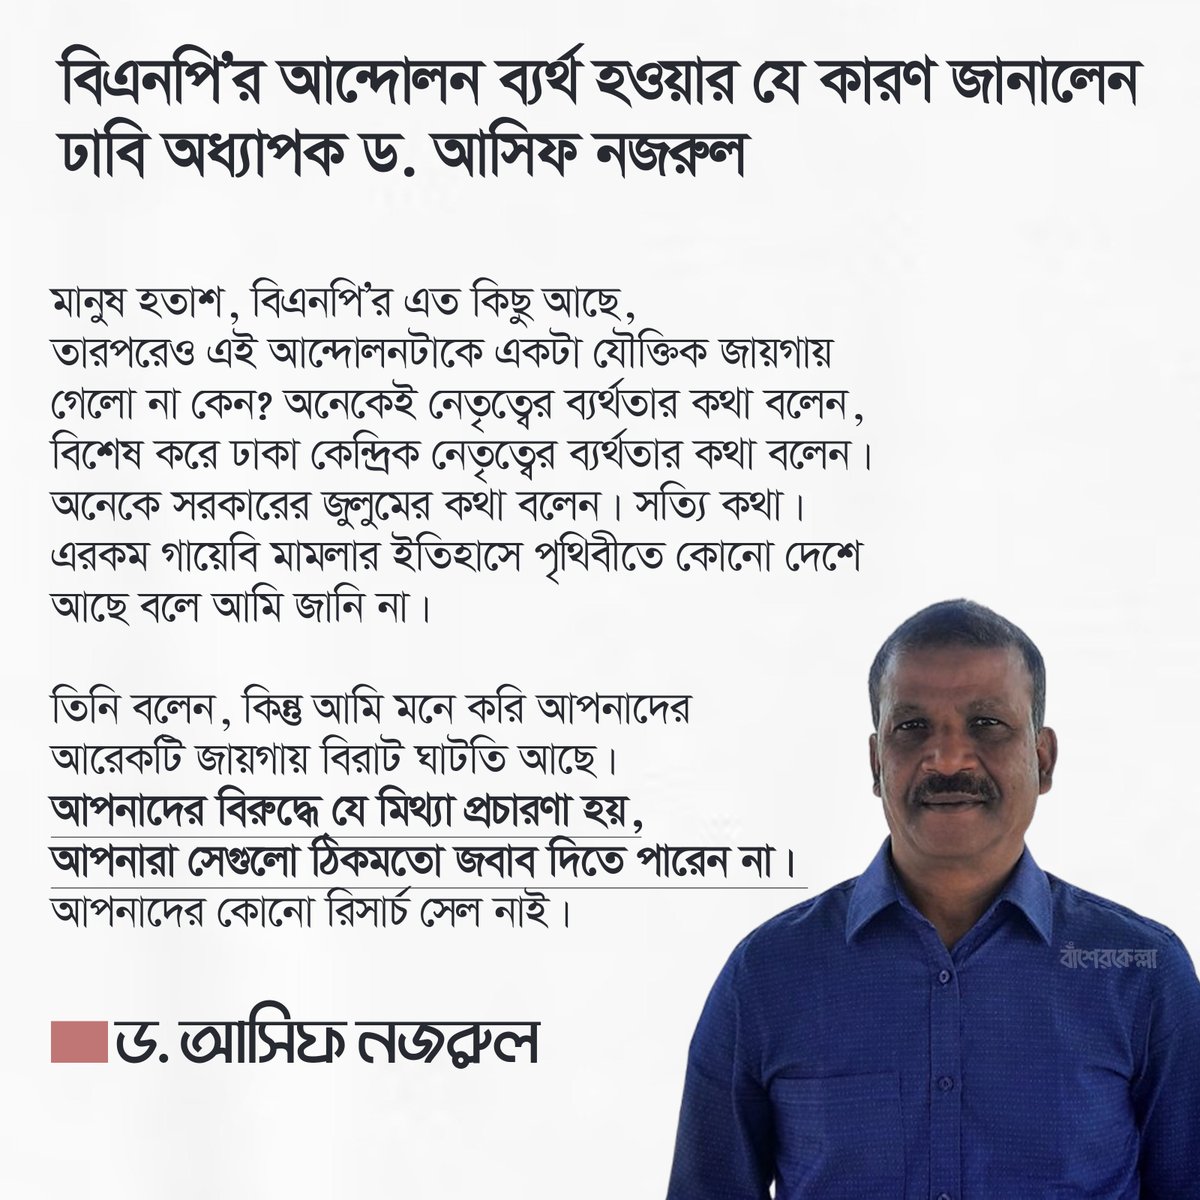 বিএনপি’র আন্দোলন ব্যর্থ হওয়ার যে কারণ জানালেন ঢাবি অধ্যাপক ড. আসিফ নজরুল;

#BNP #Dhaka #Bangladesh